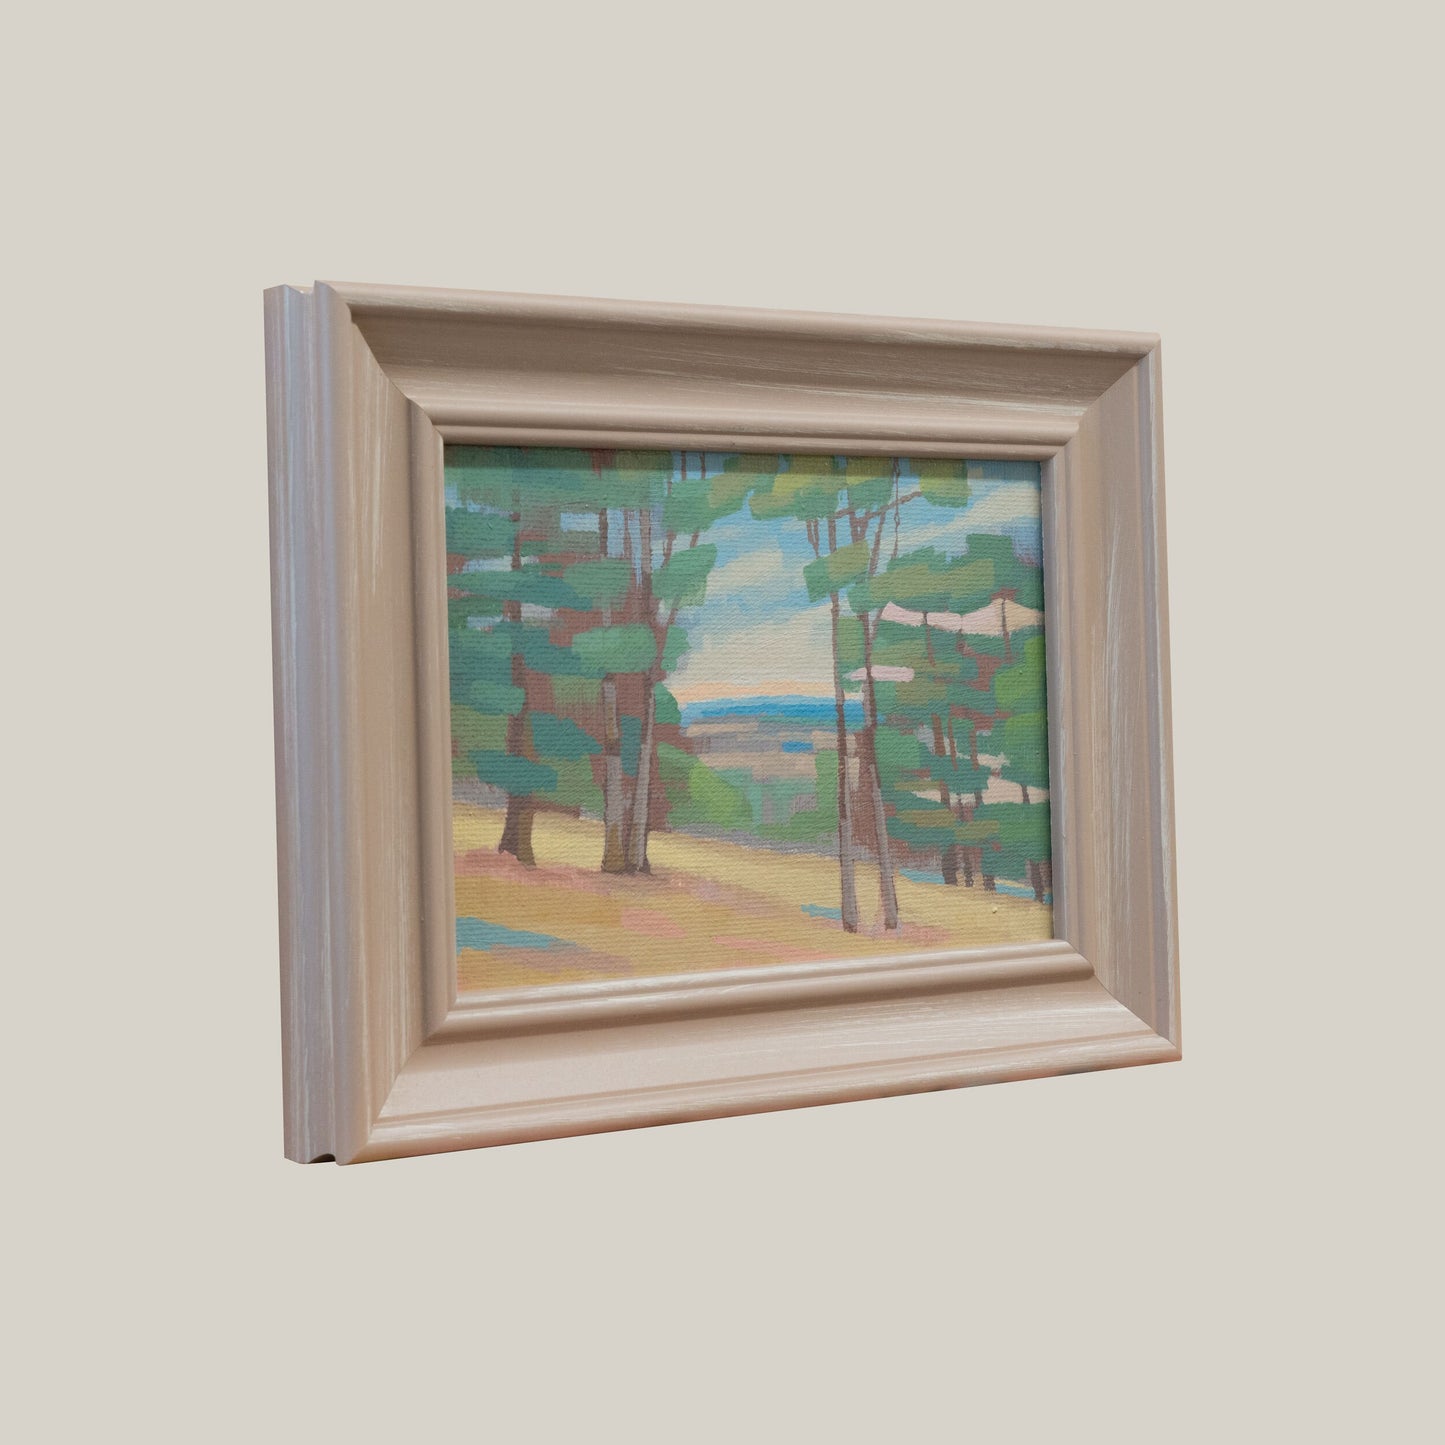 Original Gemälde – "Weitblick" - handgemalt – Acrylbild – 10x15 cm – Landschaft Bild – Einzelstück – mit Rahmen